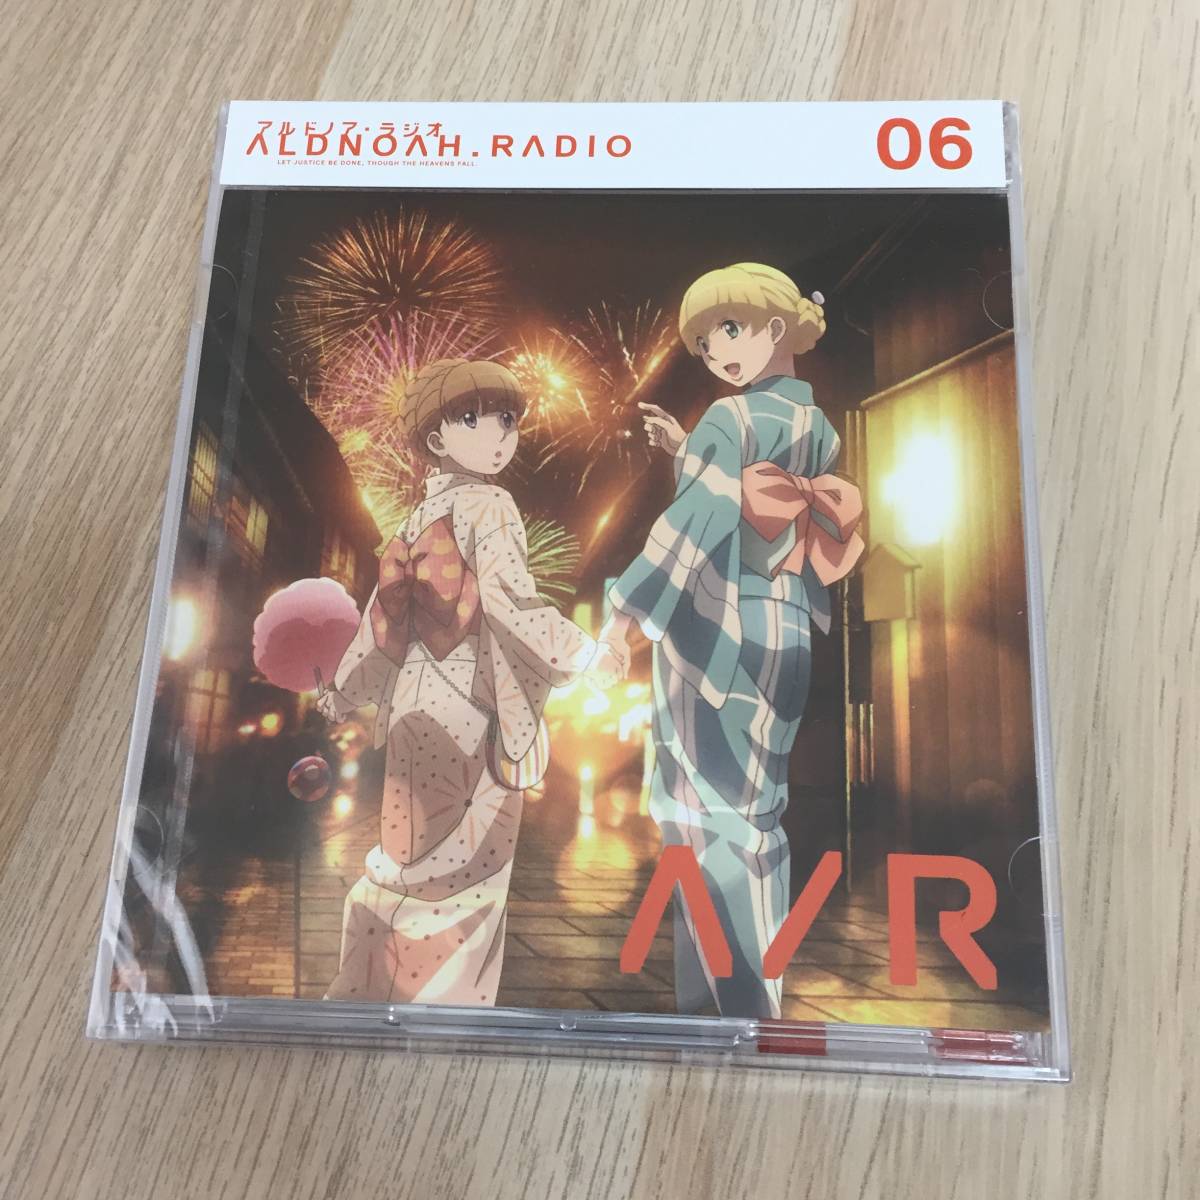 ラジオCD「アルドノア・ラジオ」 Vol.6★未開封品